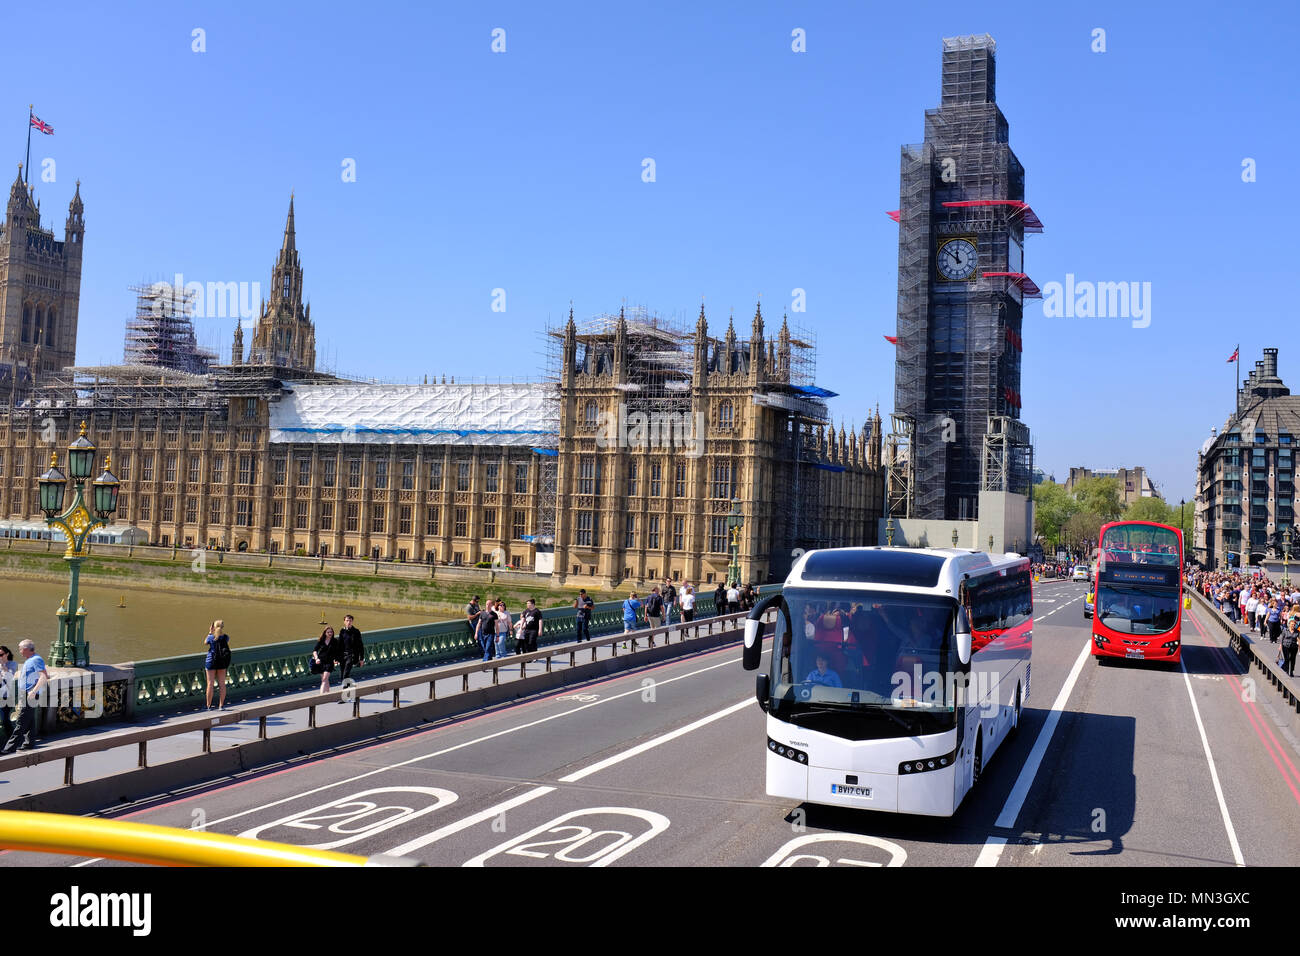 Le pont de Westminster avec Big Ben couverte d'échafaudages Banque D'Images